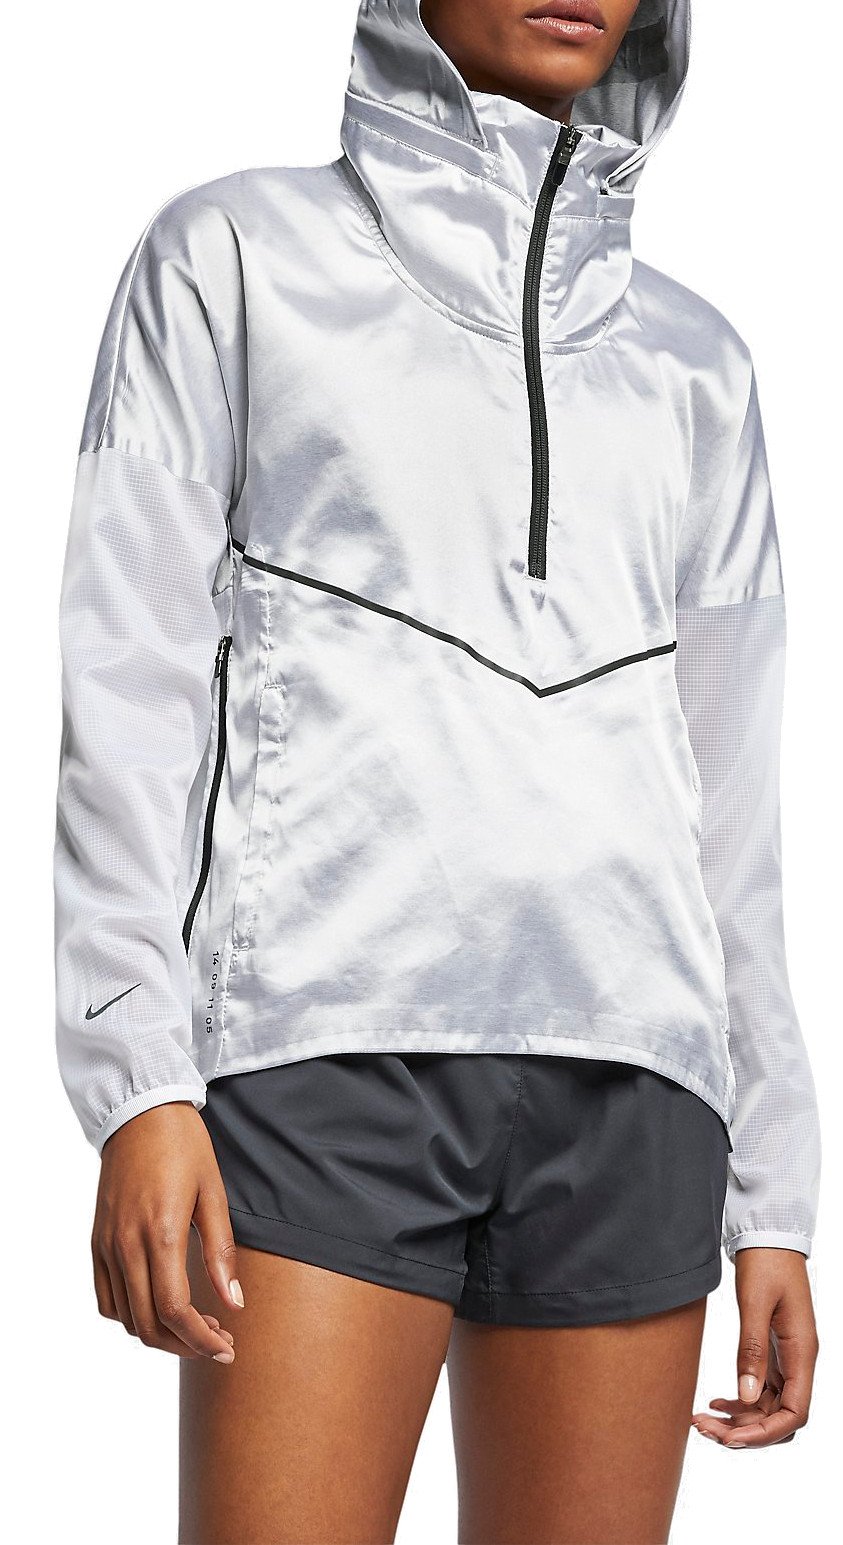 Dámská běžecká bunda s kapucí Nike Rain Tech Pack